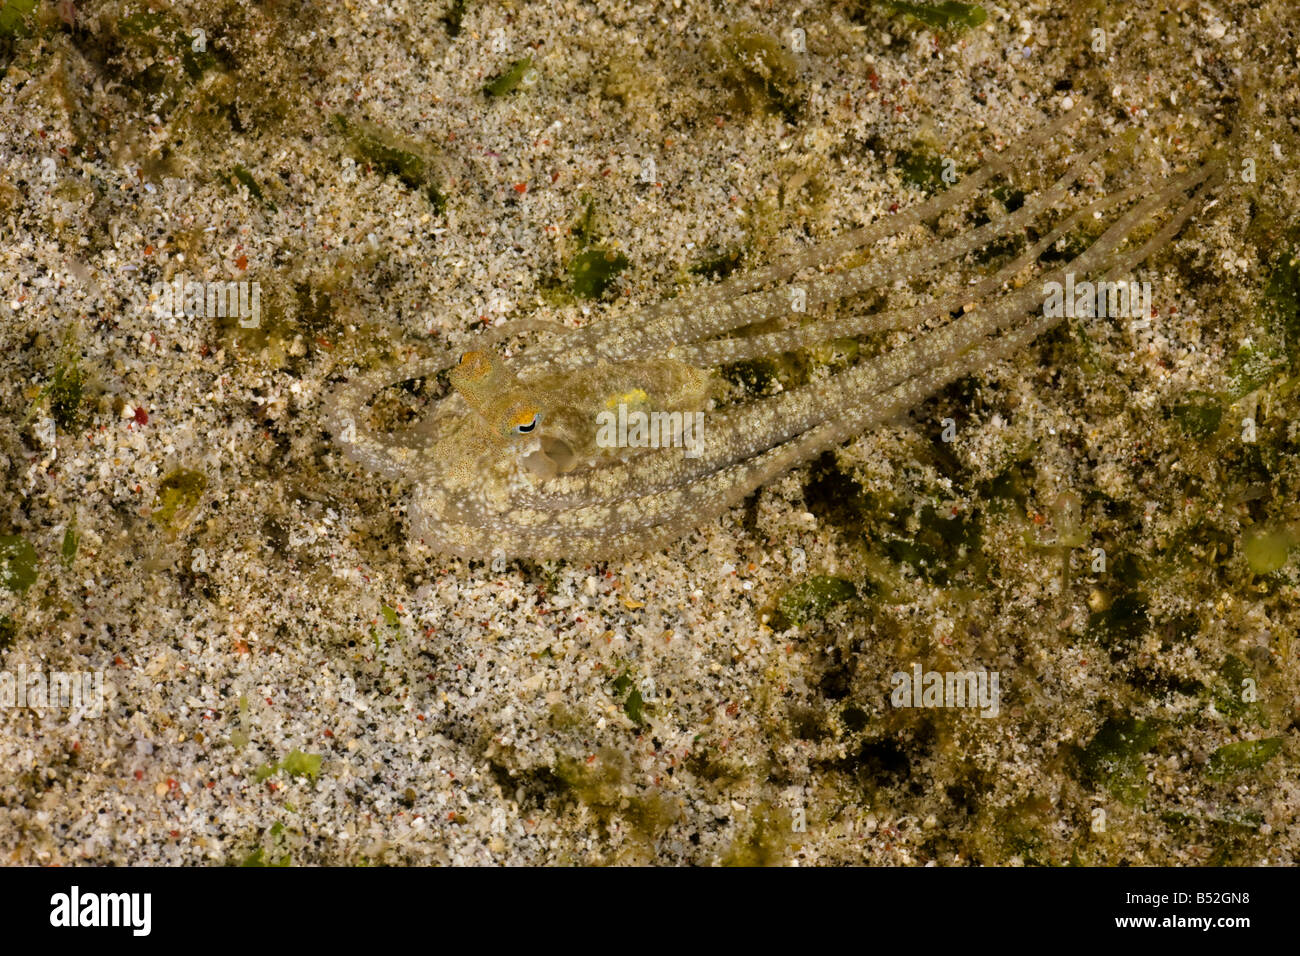 Eine unbeschrieben Arten lange bewaffnete Krake Tintenfisch sp Komodo Indonesien Stockfoto